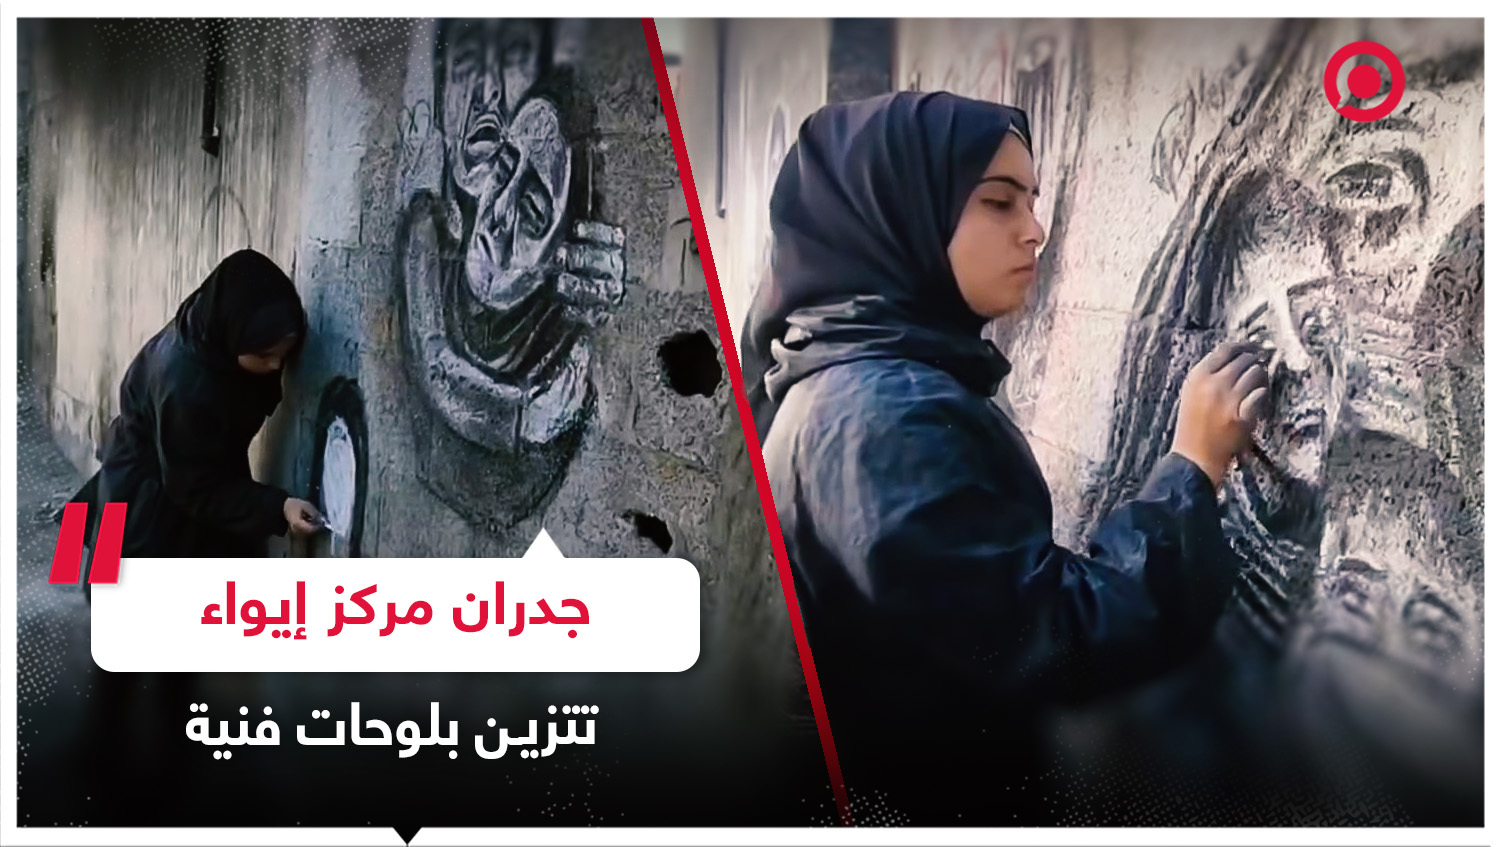 فتاة فلسطينية تحول جدران مركز نزحت إليه في قطاع غزة إلى لوحات فنية